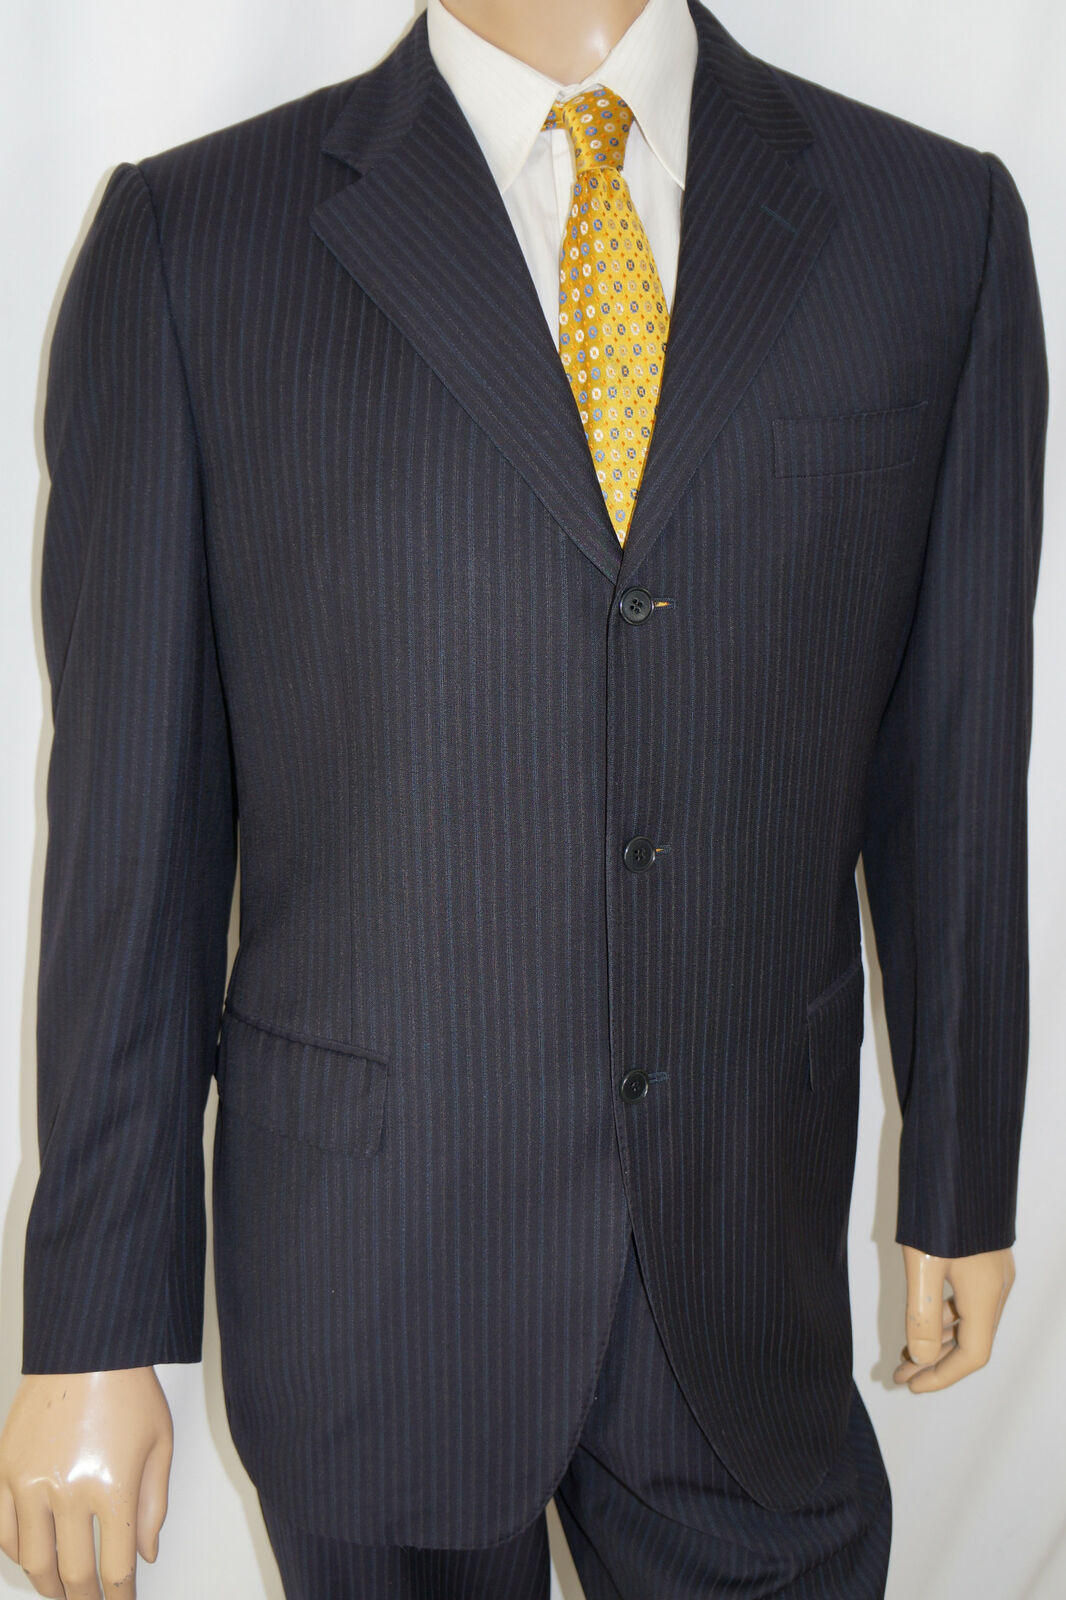 CANALI $2495 2-Piece Suit - Men 42L Black Pinstri… - image 1